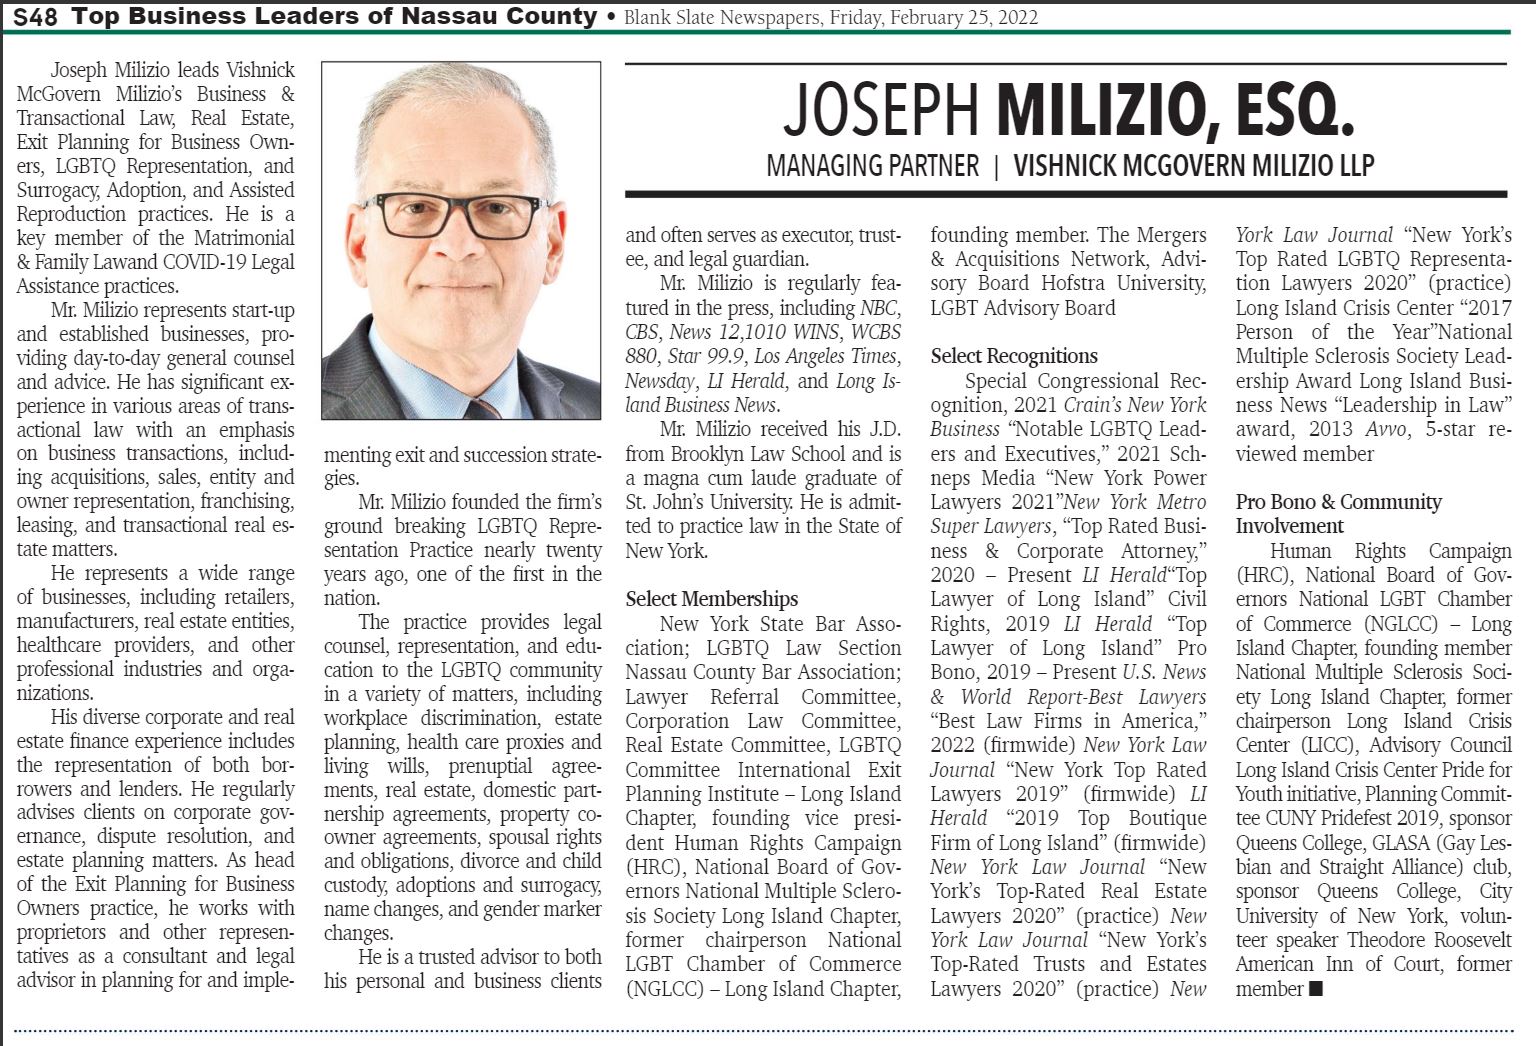 Article About Joseph Milizio